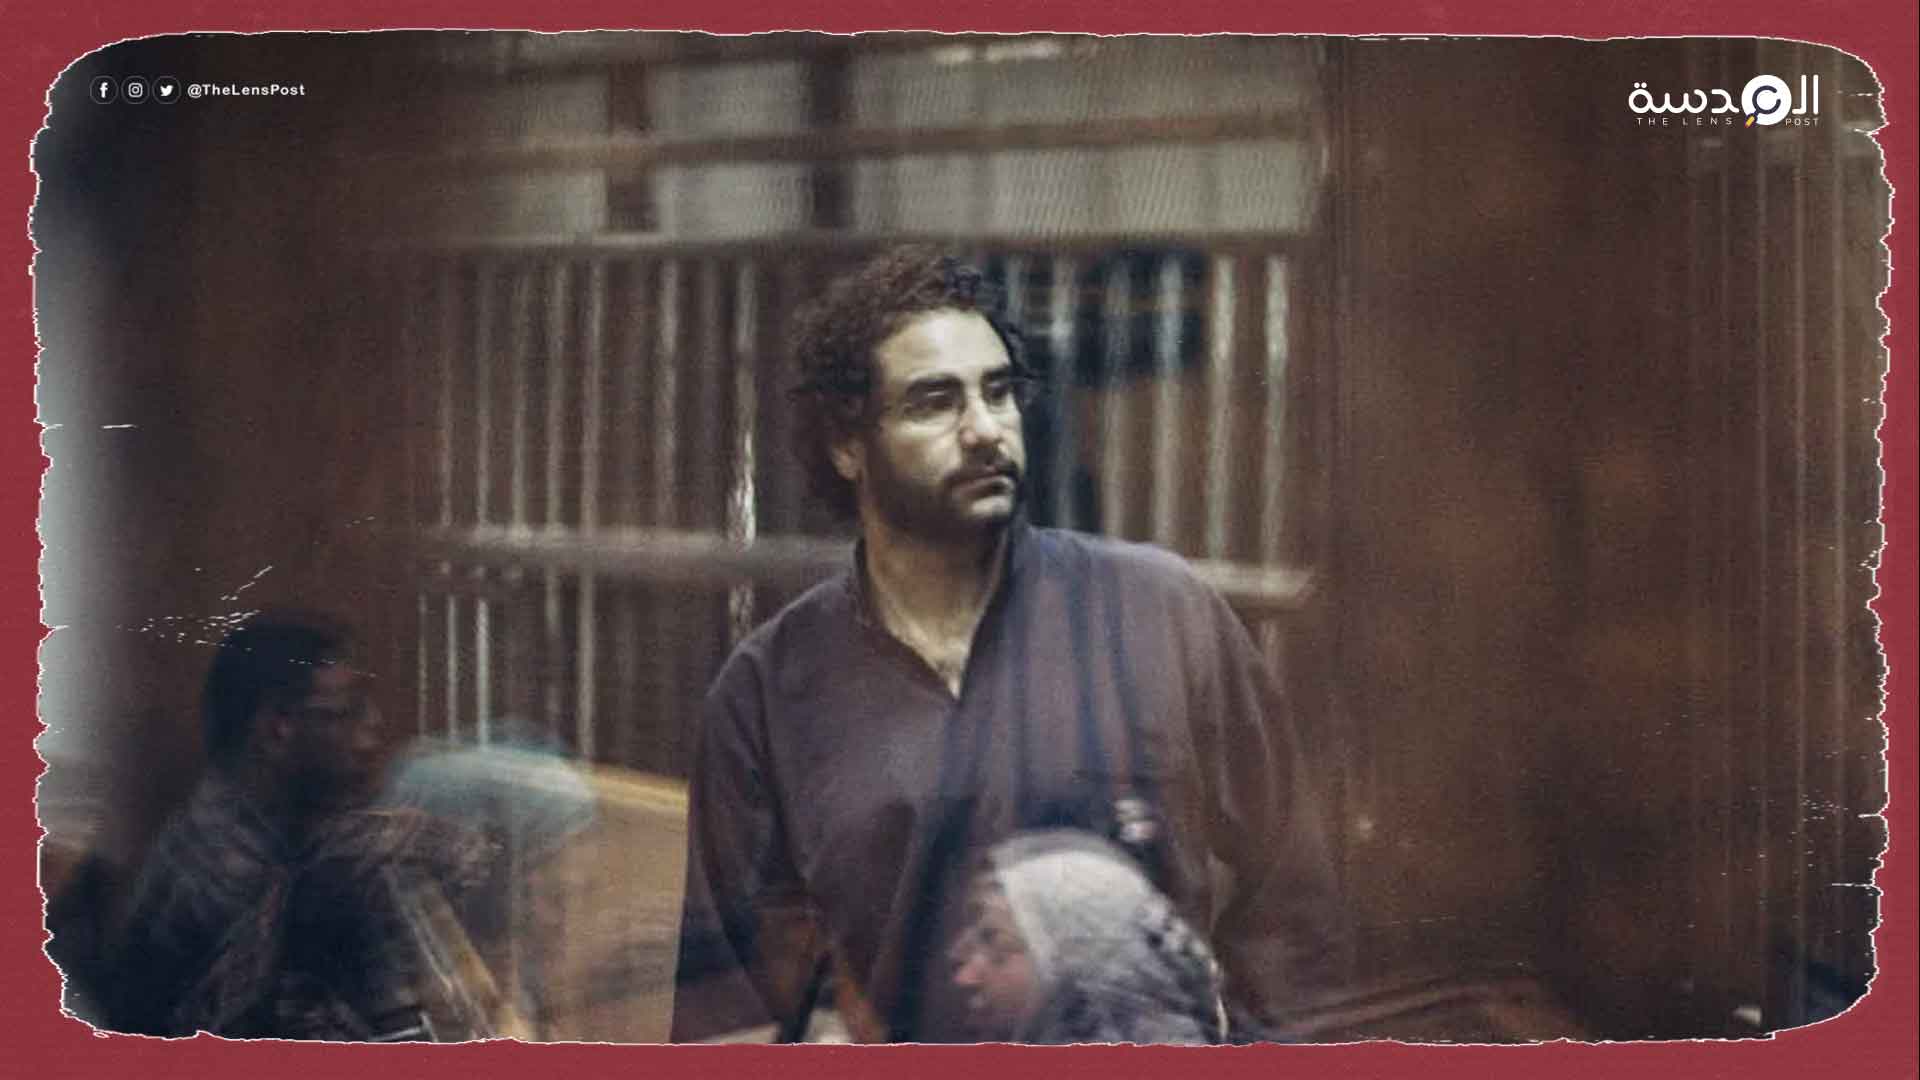 مطالبات بالإفراج عن "علاء عبد الفتاح" المعتقل في مصر